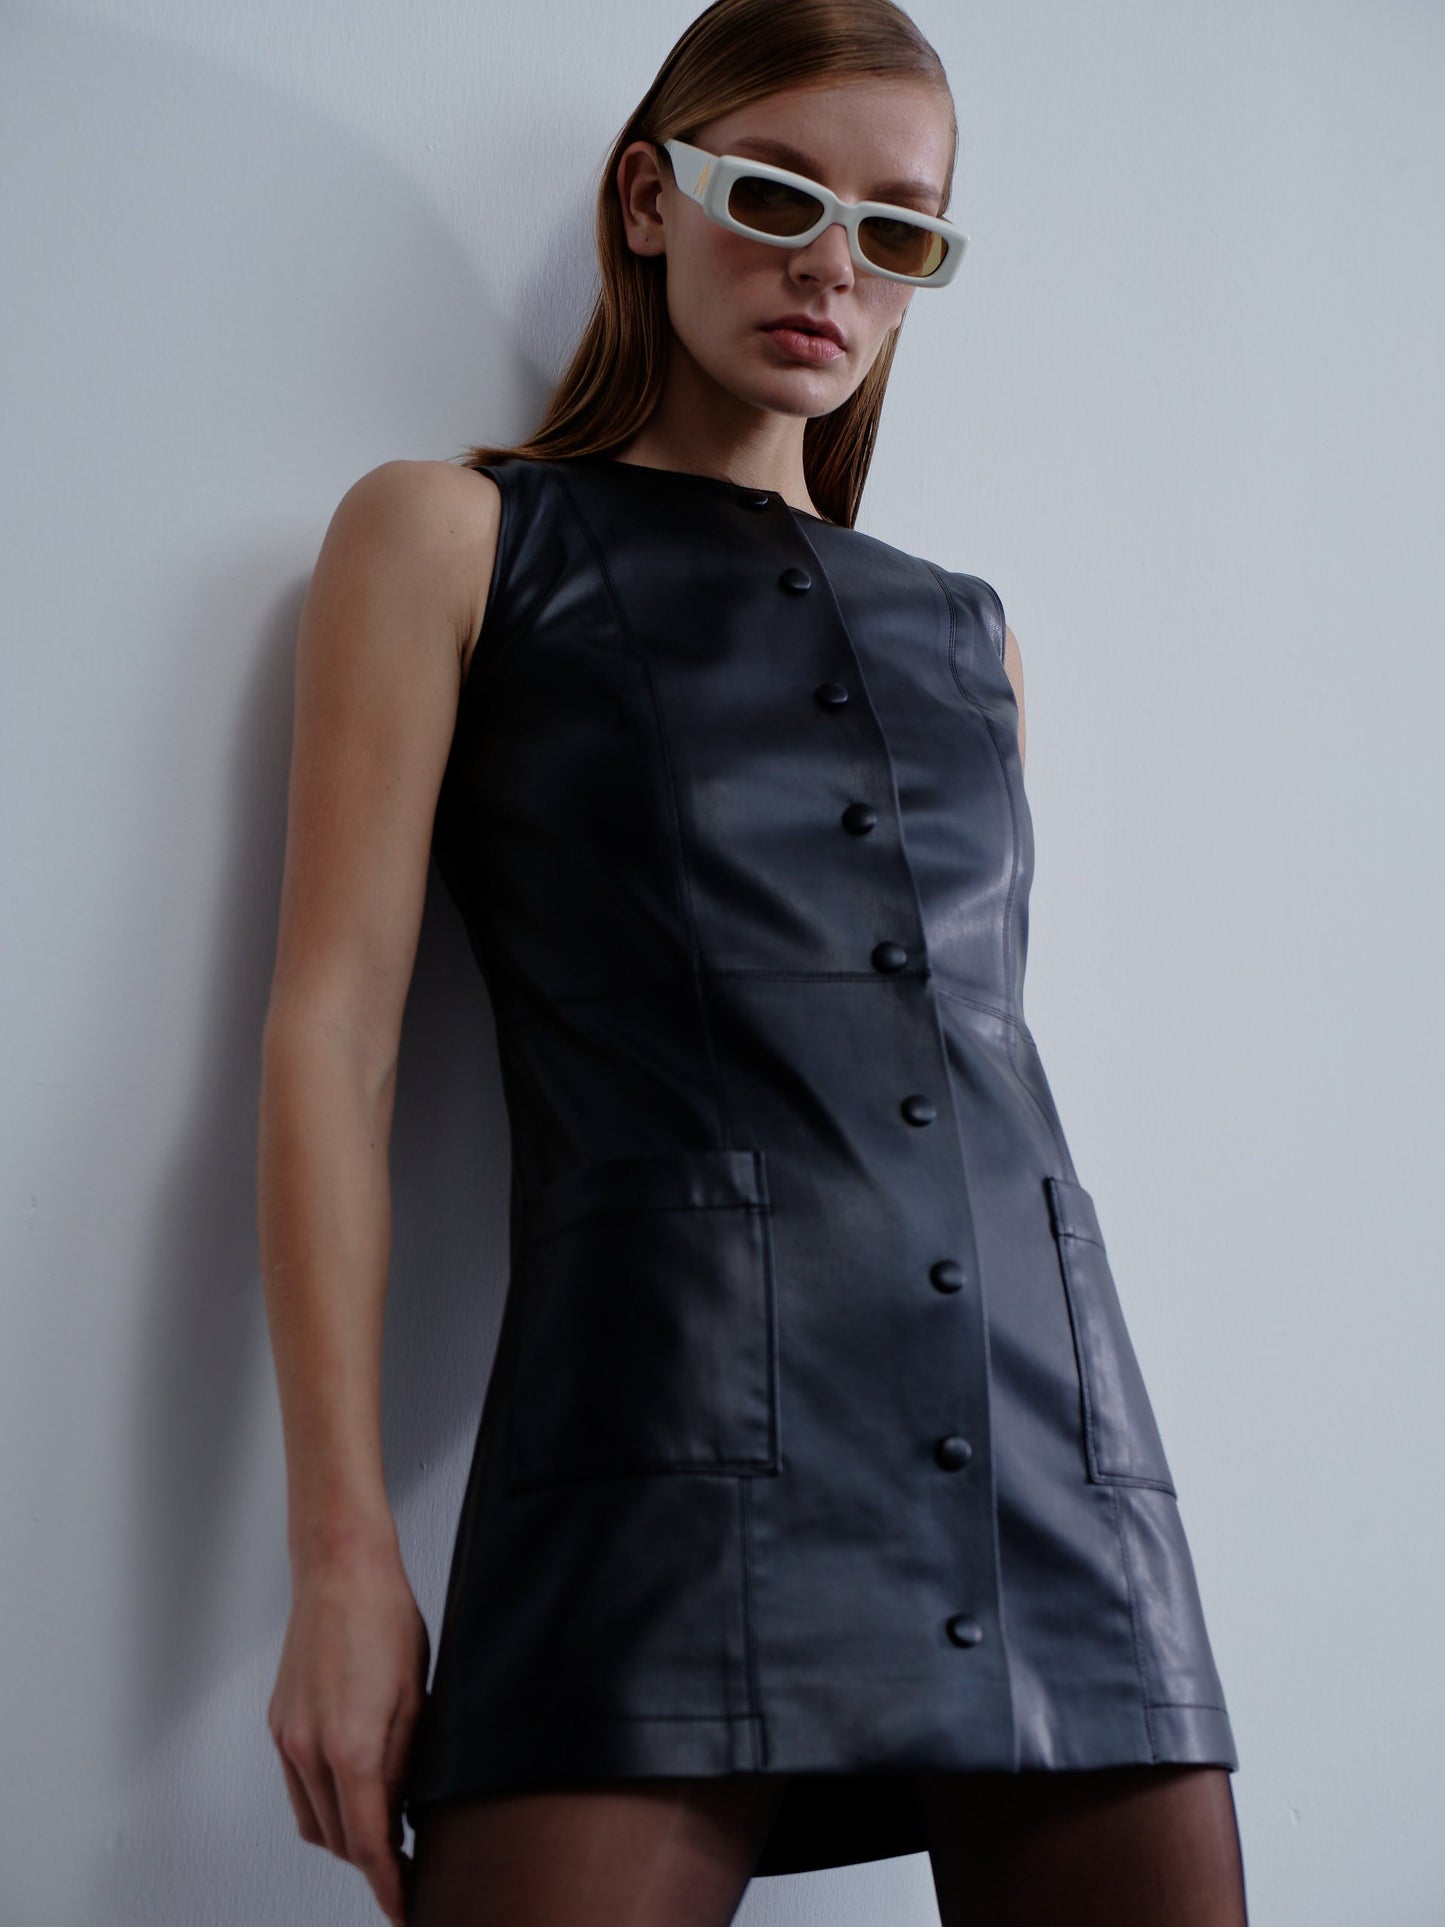 Odette Vegan Leather Mini Dress in Noire